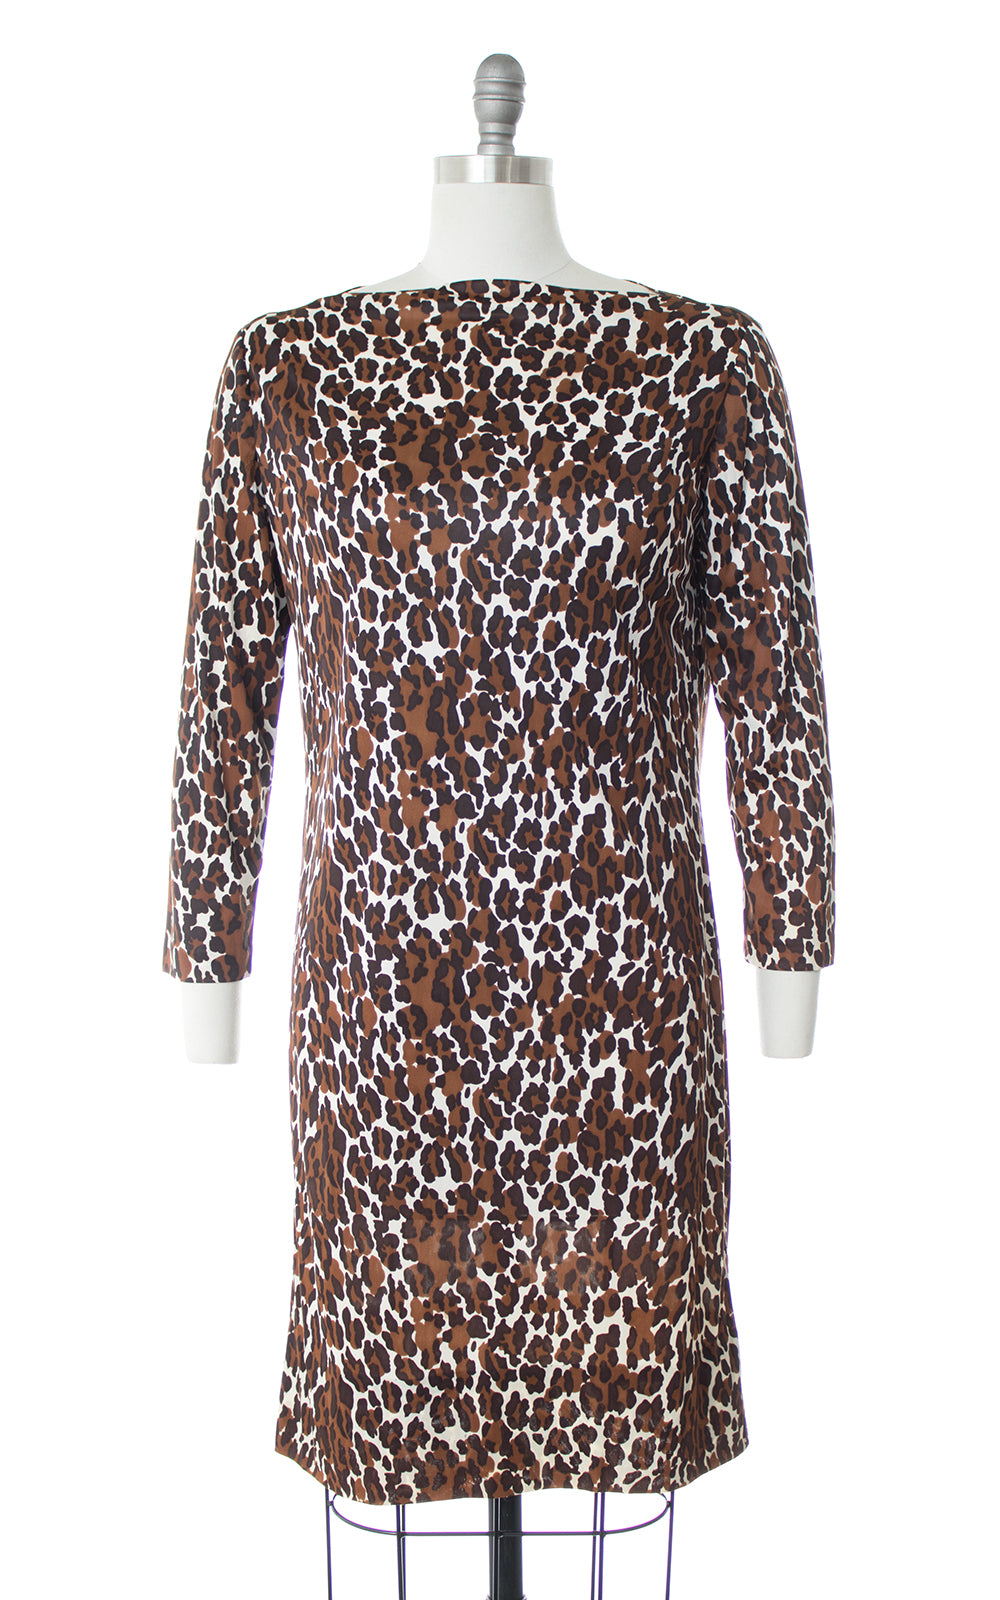 1960s Leopard Print Nylon Shift Dress